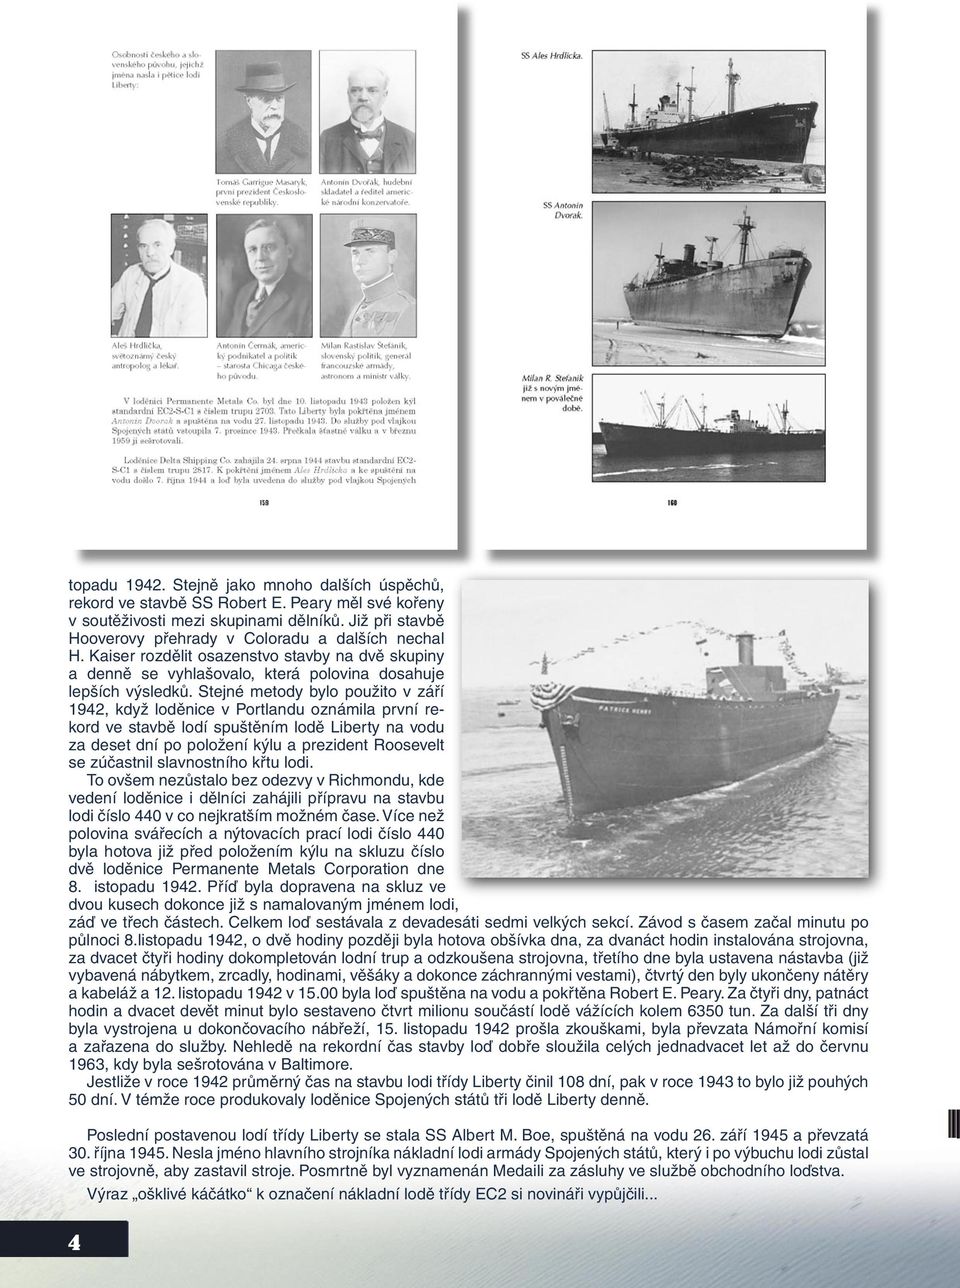 Stejné metody bylo použito v září 1942, když loděnice v Portlandu oznámila první rekord ve stavbě lodí spuštěním lodě Liberty na vodu za deset dní po položení kýlu a prezident Roosevelt se zúčastnil